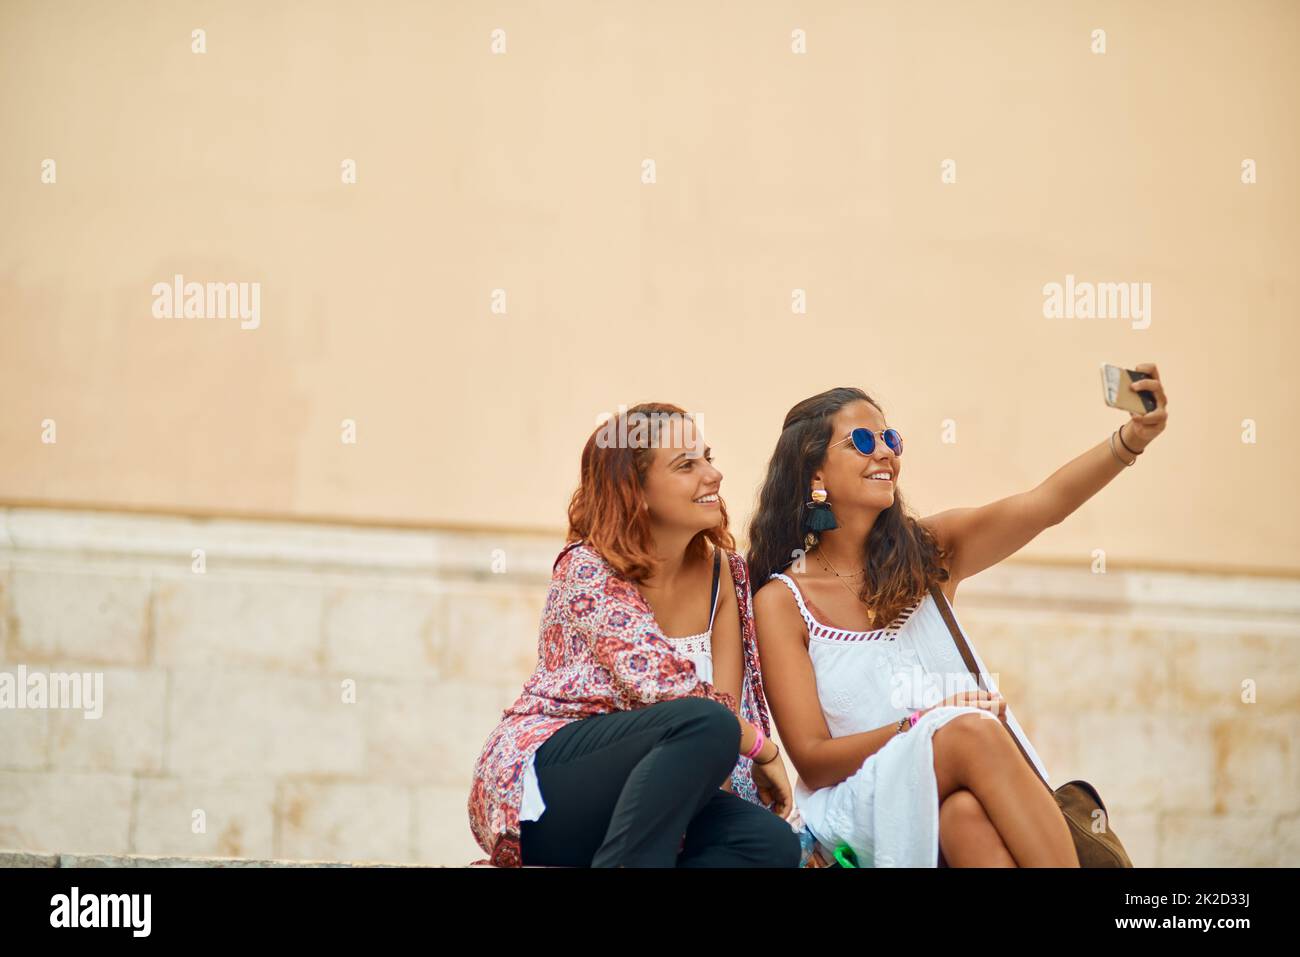 Ein Selfie für jeden Tag unserer Reise. Ausgeschnittene Aufnahme von zwei attraktiven jungen Schwestern, die Selfies in einer fremden Stadt machen. Stockfoto